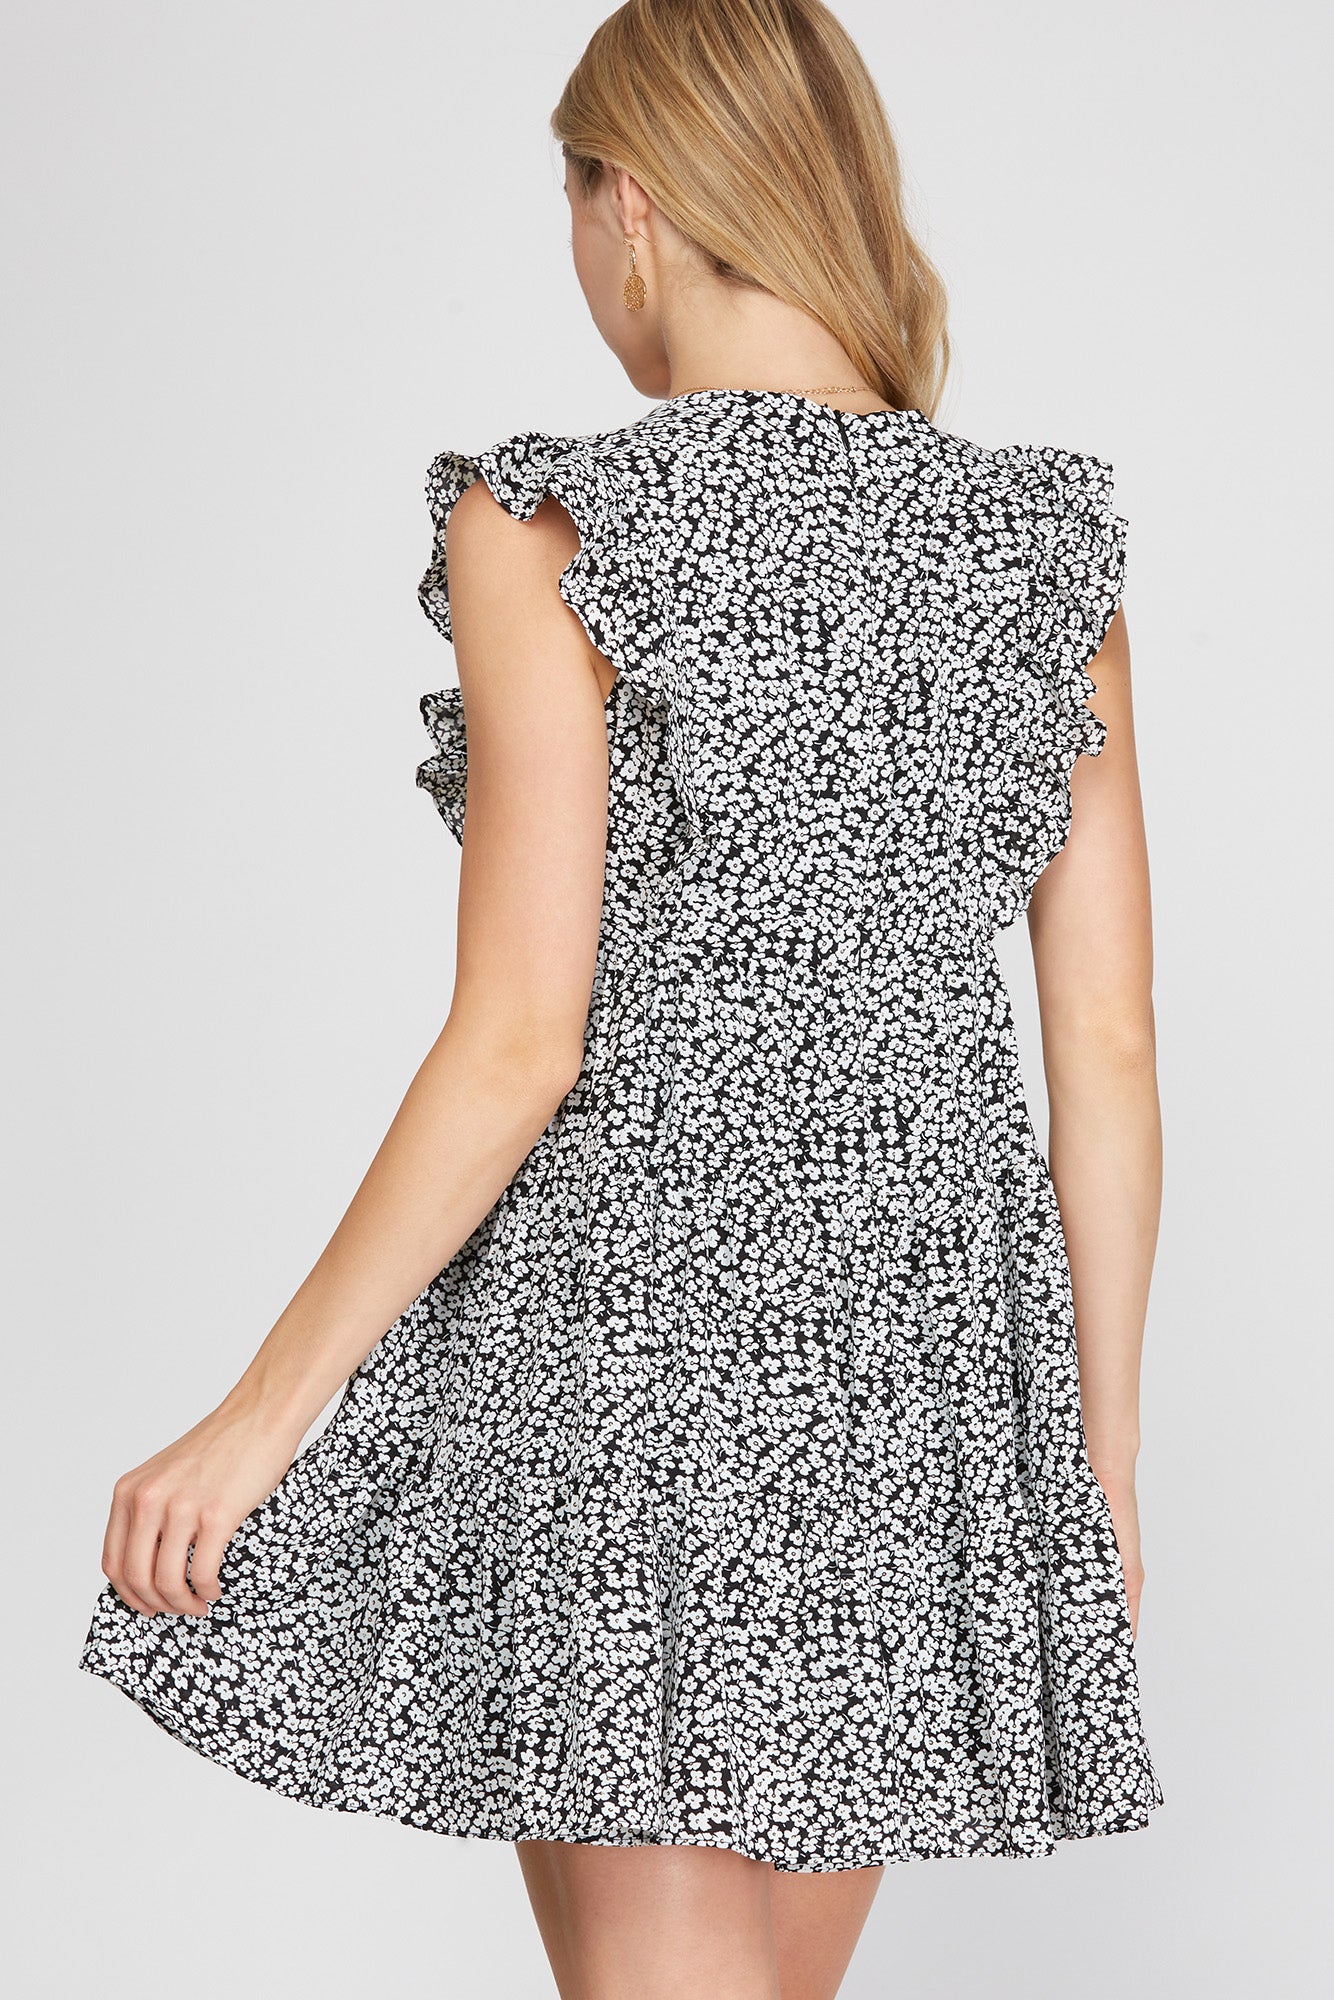 Sleeveless Woven Print Dress!